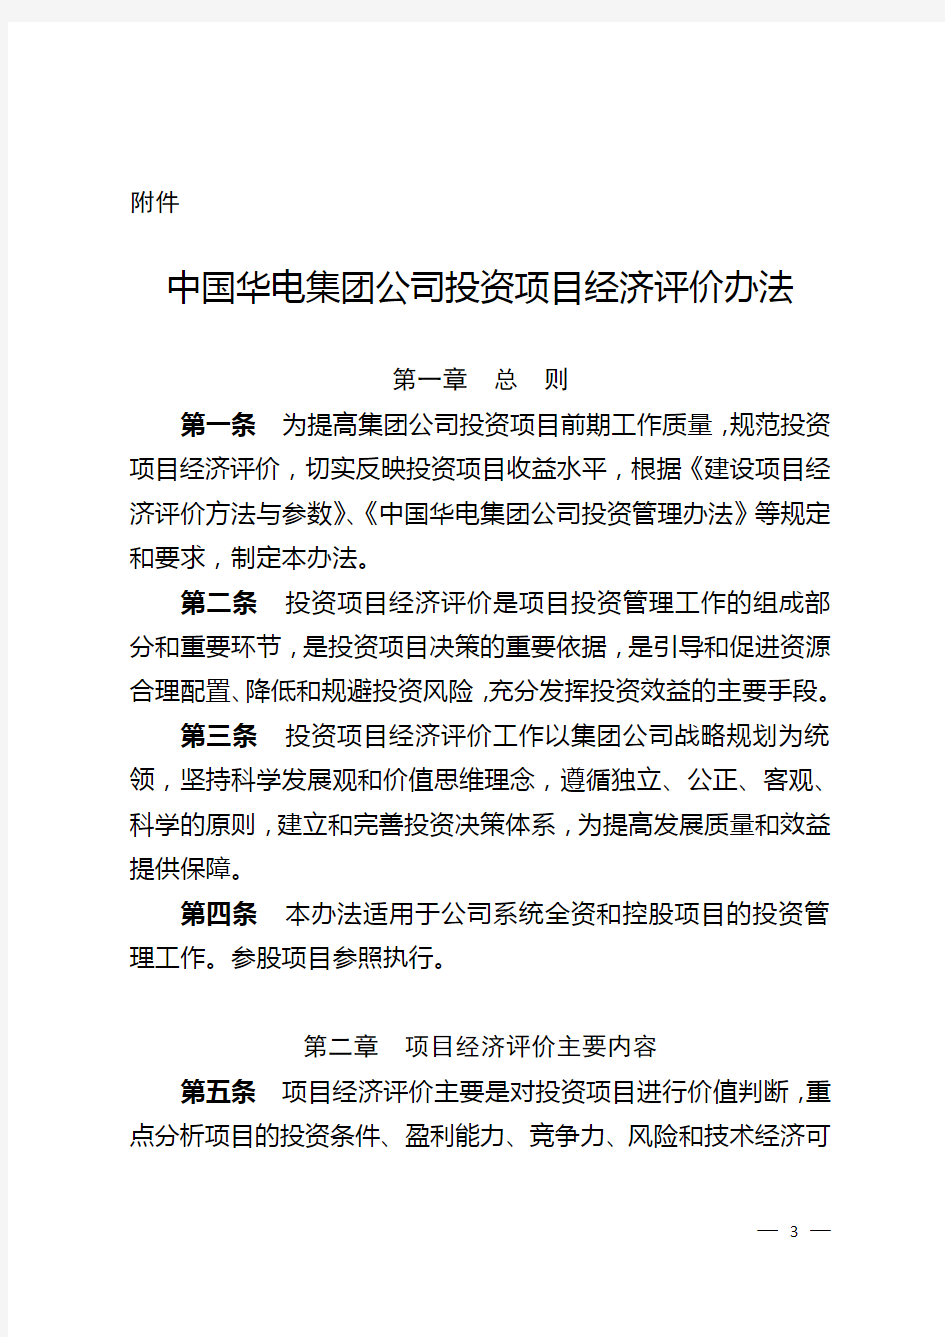 中国华电集团公司投资项目经济评价办法